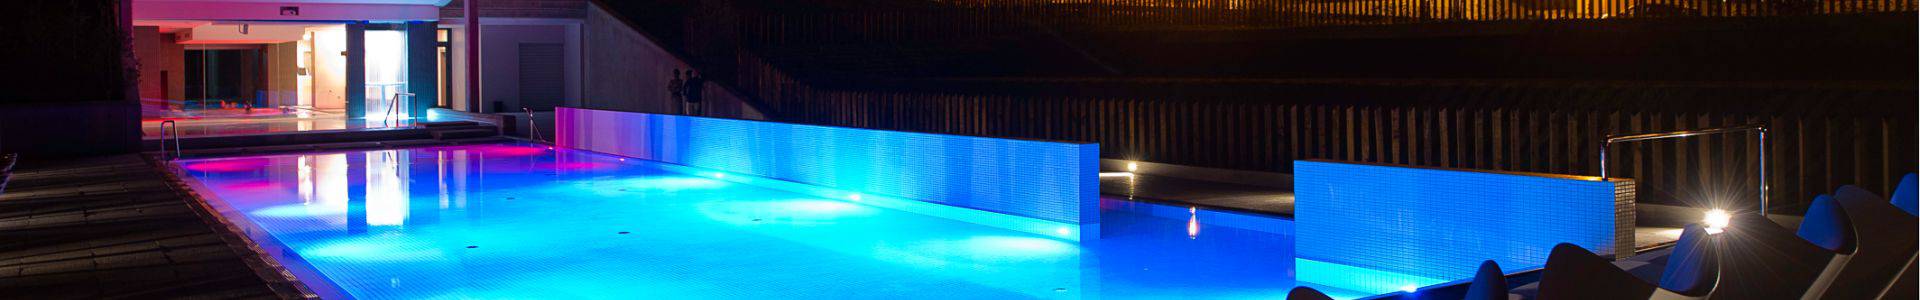 Gran Hotel Las Caldas by blau hotels - Asturies - 